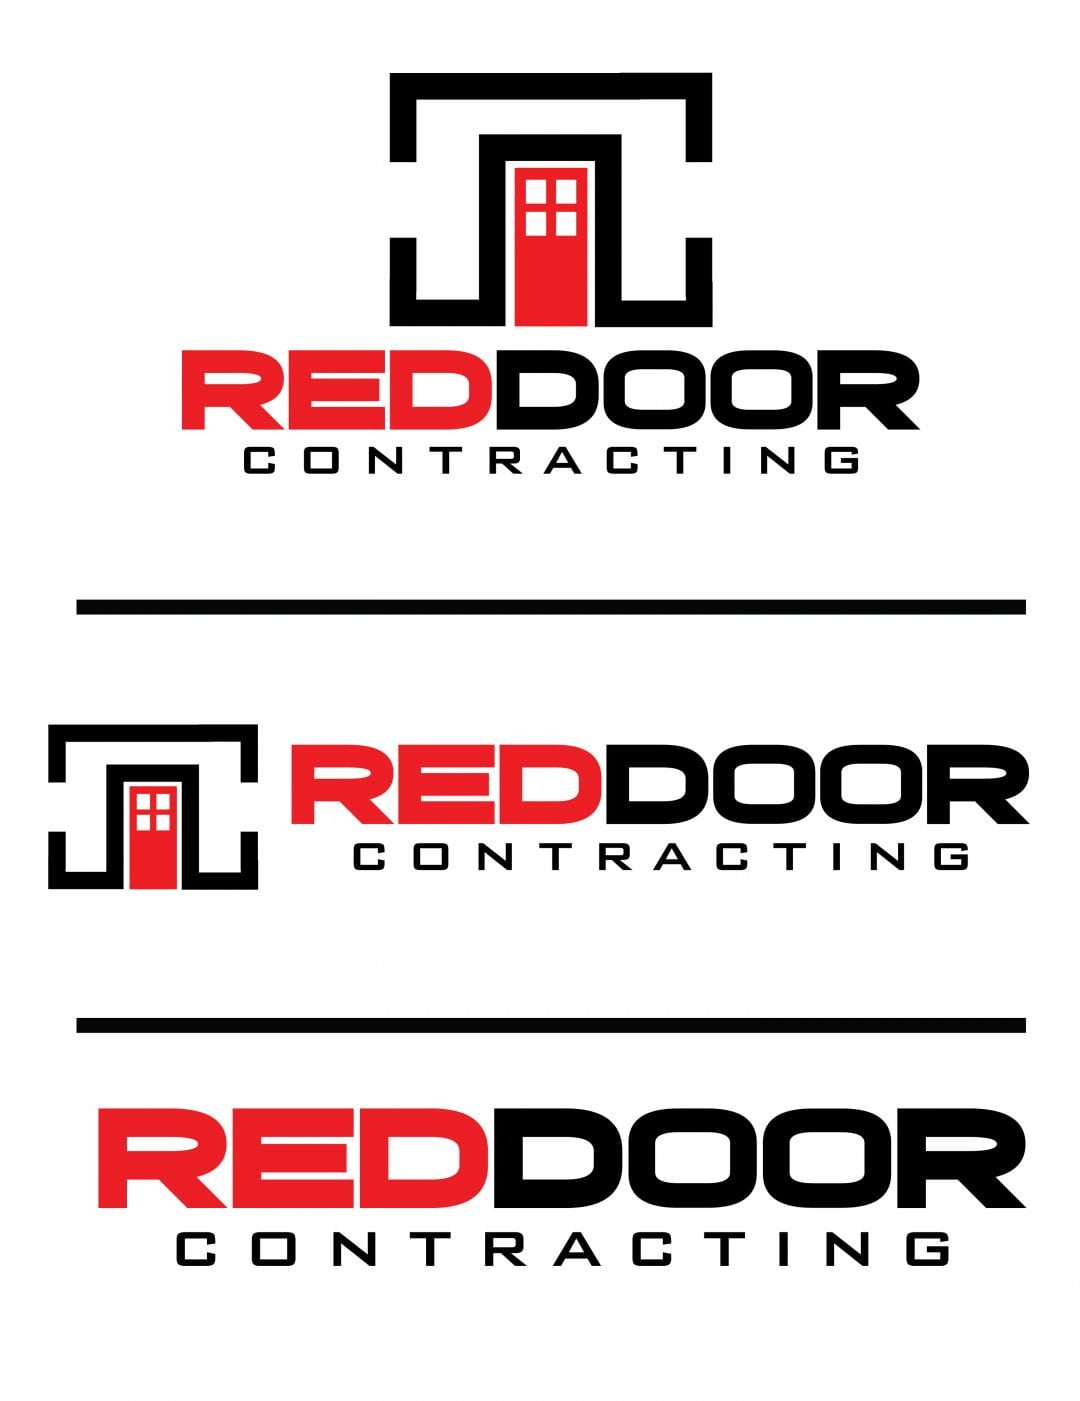 RED DOOR CONTRACTING